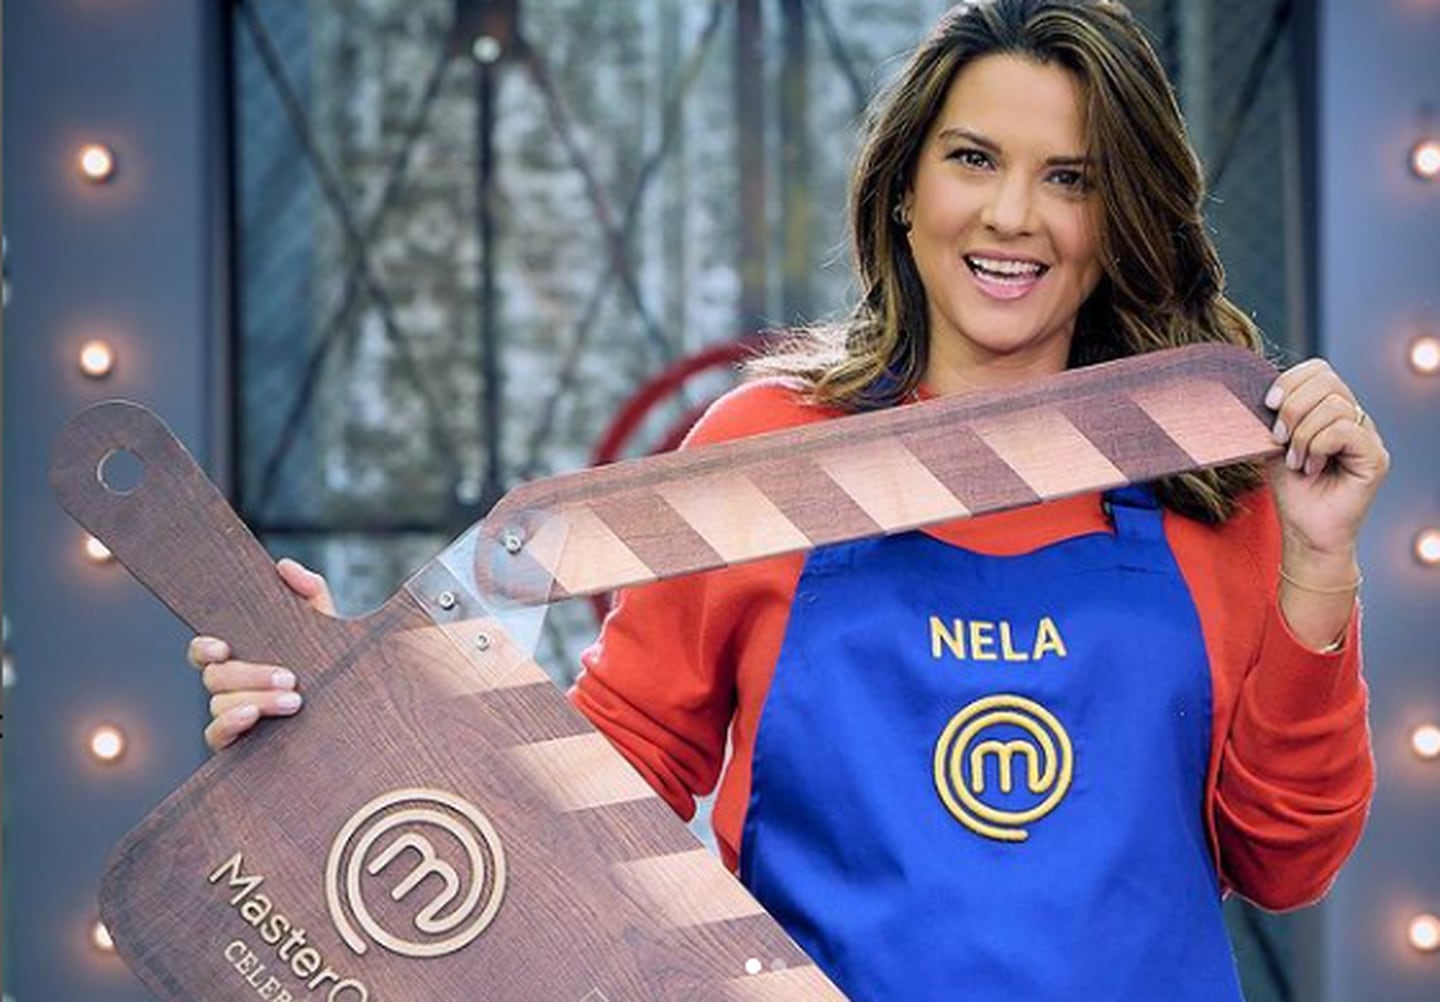 Nela González como actriz, participó en telenovelas reconocidas y ahora está compitiendo en 'MasterChef Celebrity', donde ganó seguidores debido a su desempeño en la cocina (@nelagonzalez)